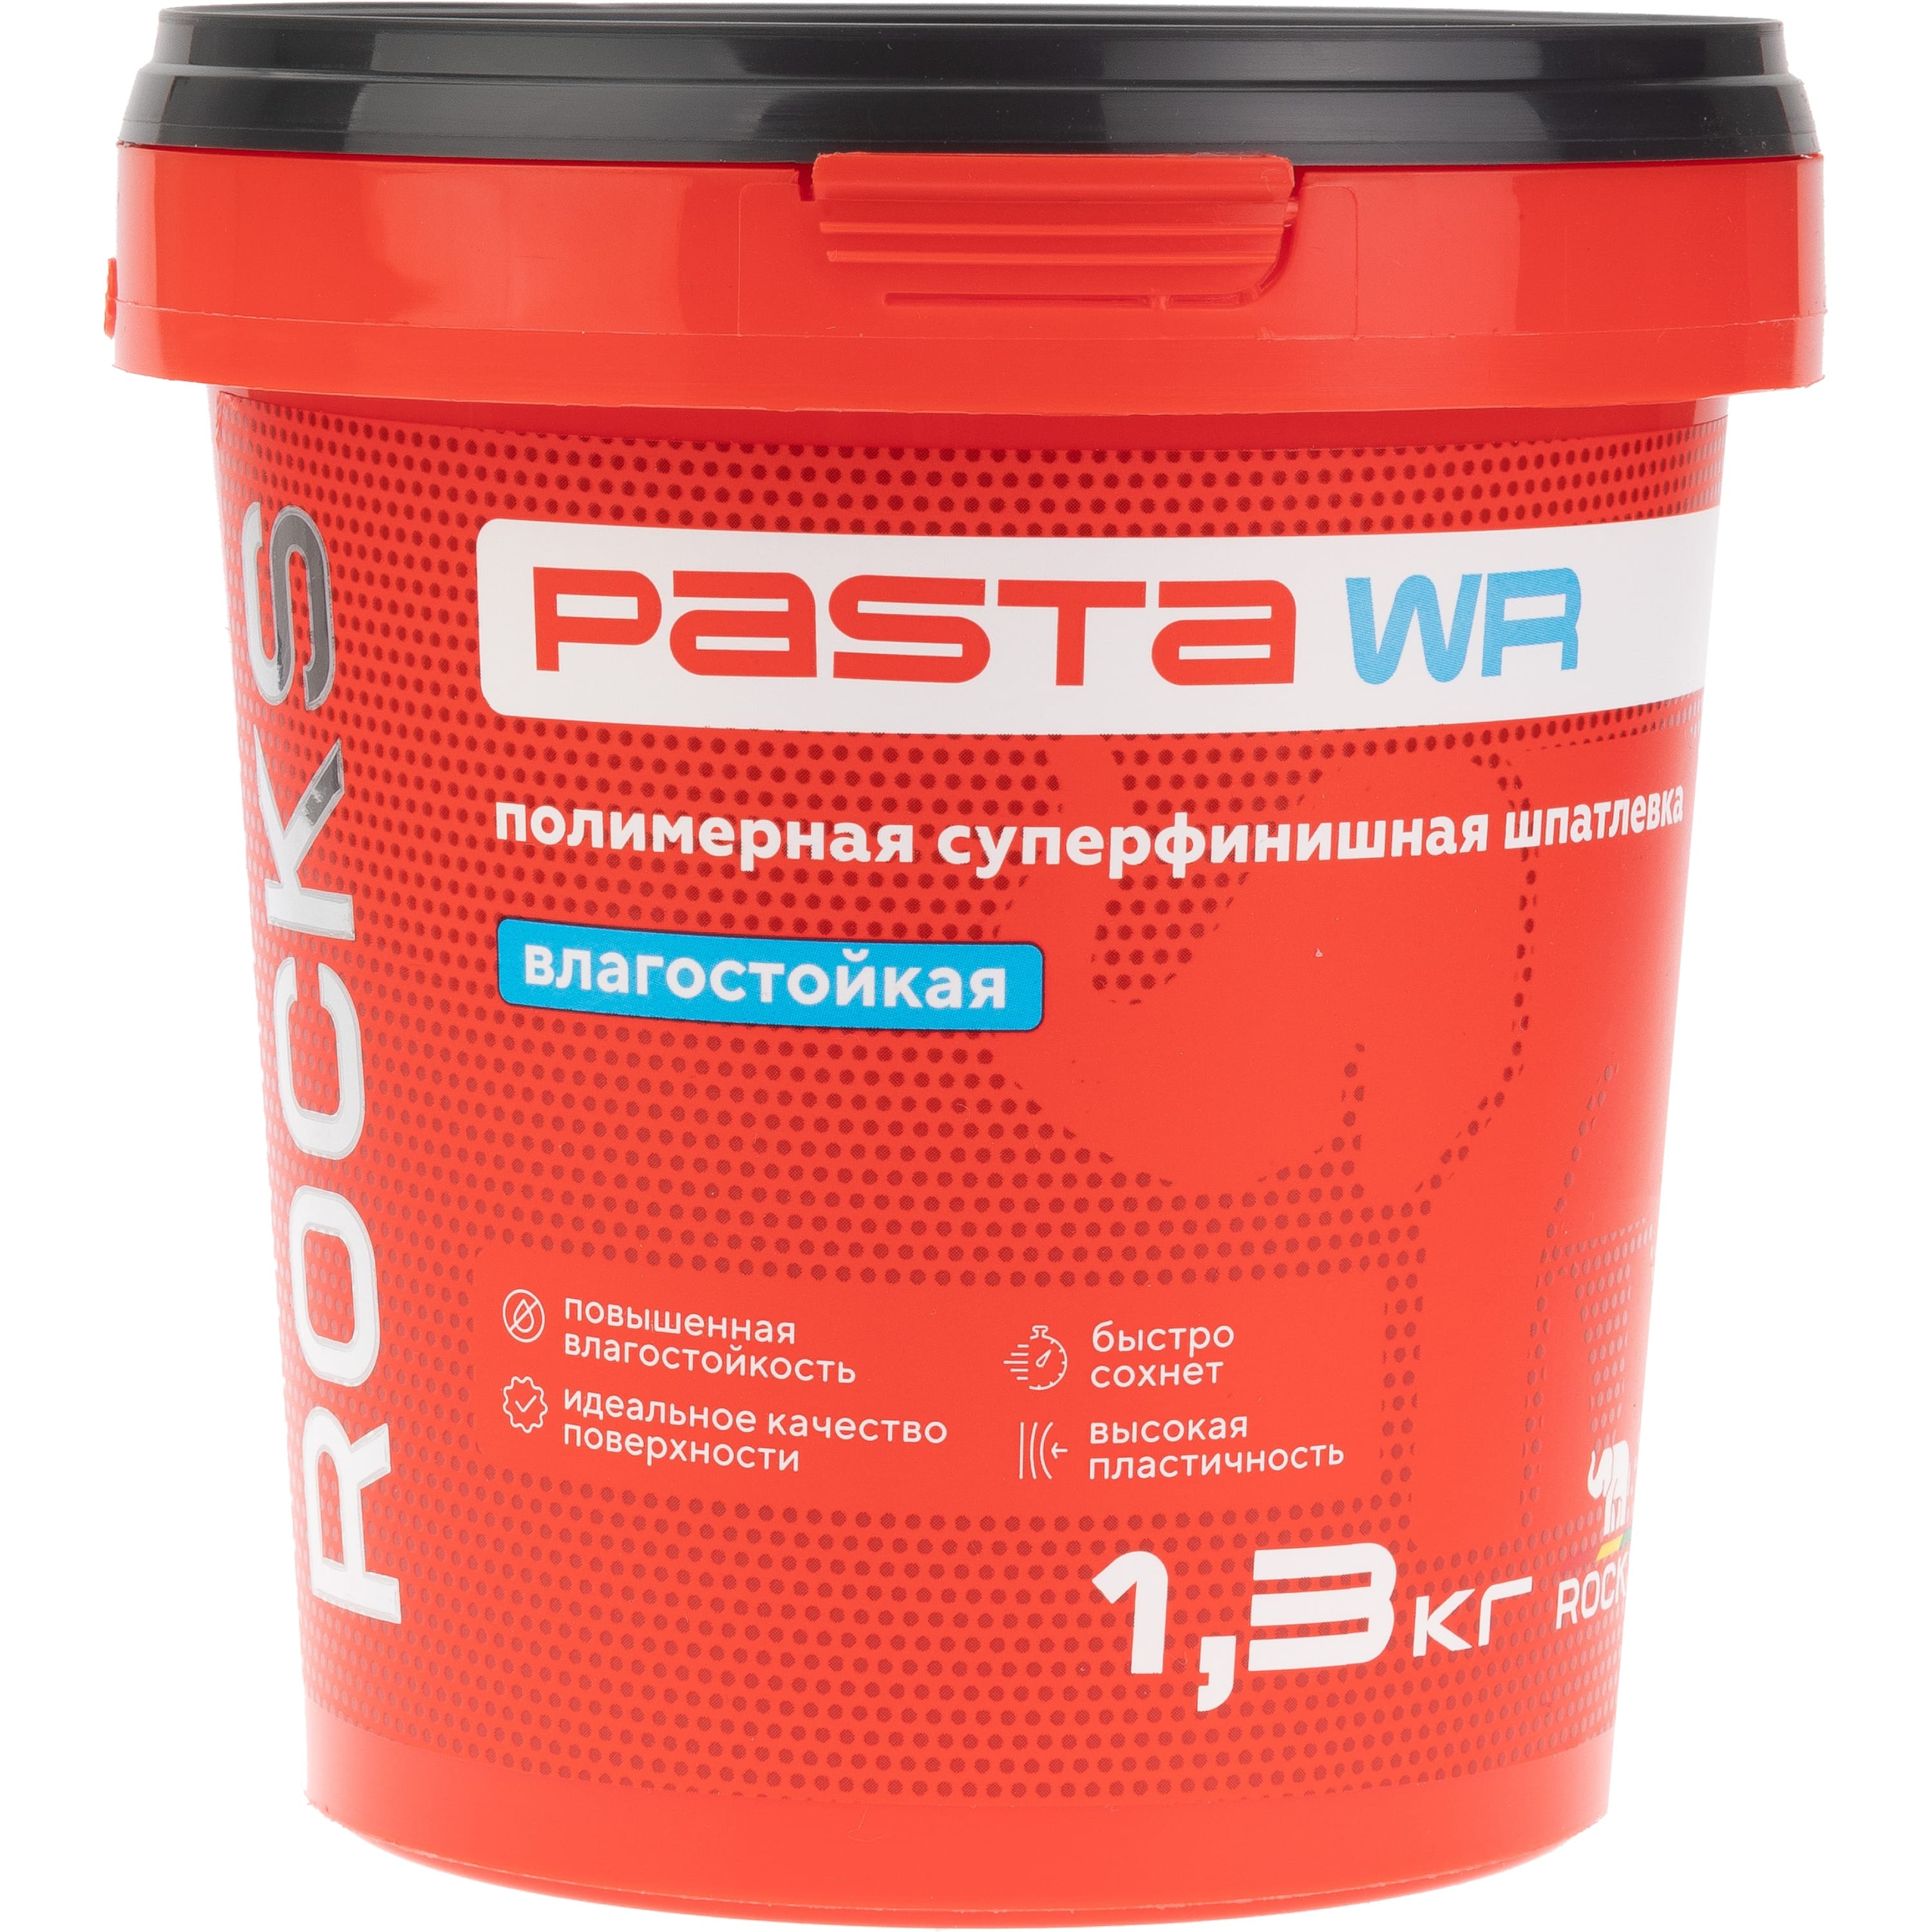 Шпатлевка полимерная Rocks Pasta суперфинишная влагостойкая 1,3 кг, цвет белый